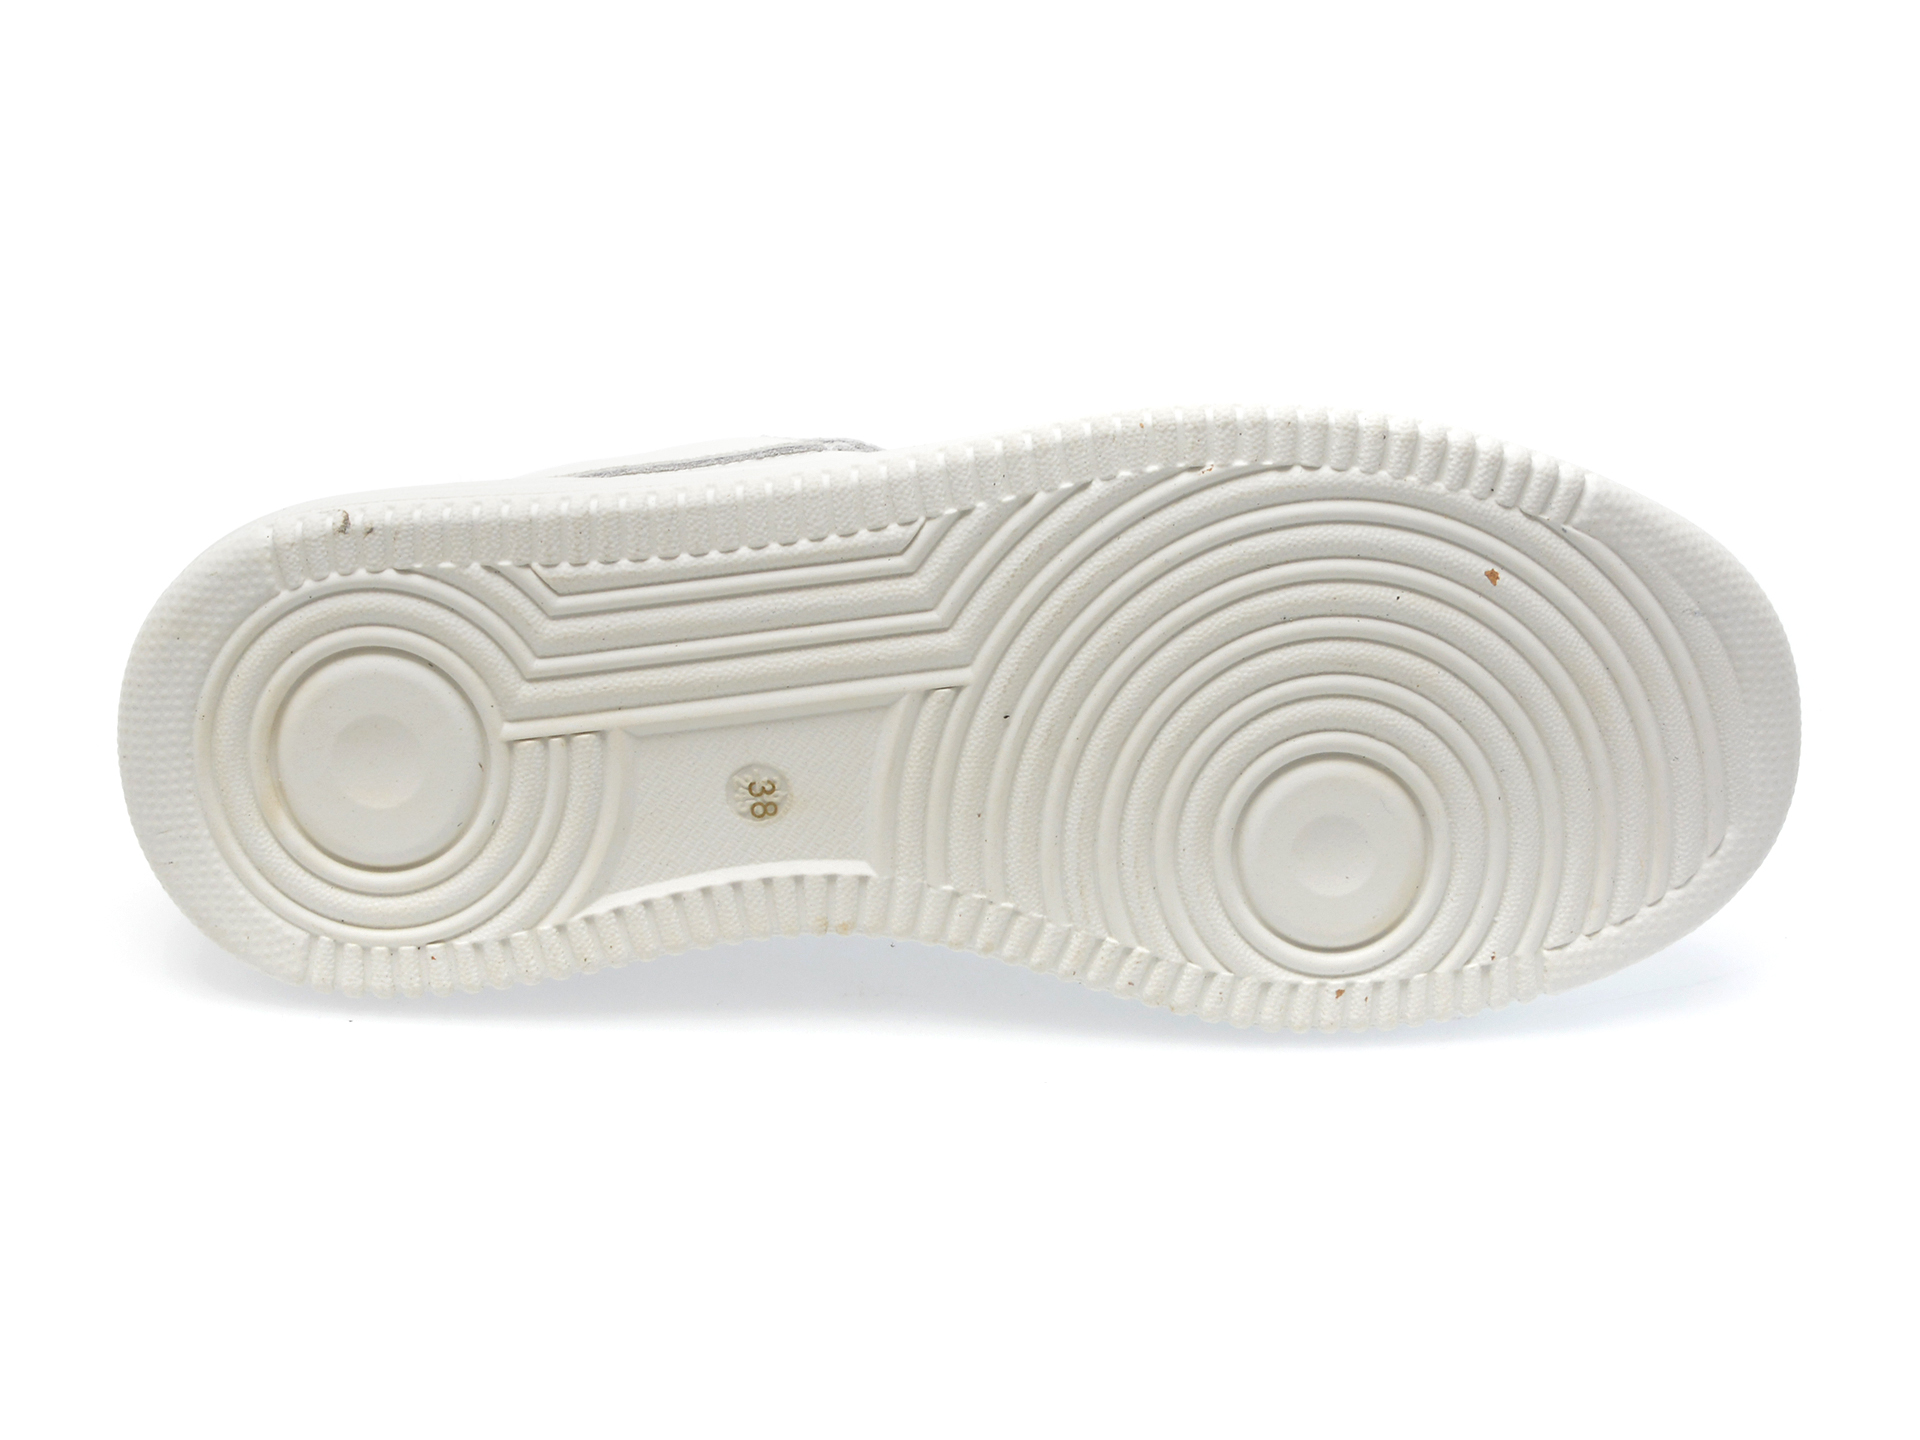 Pantofi GRYXX albi, 602601, din piele naturala